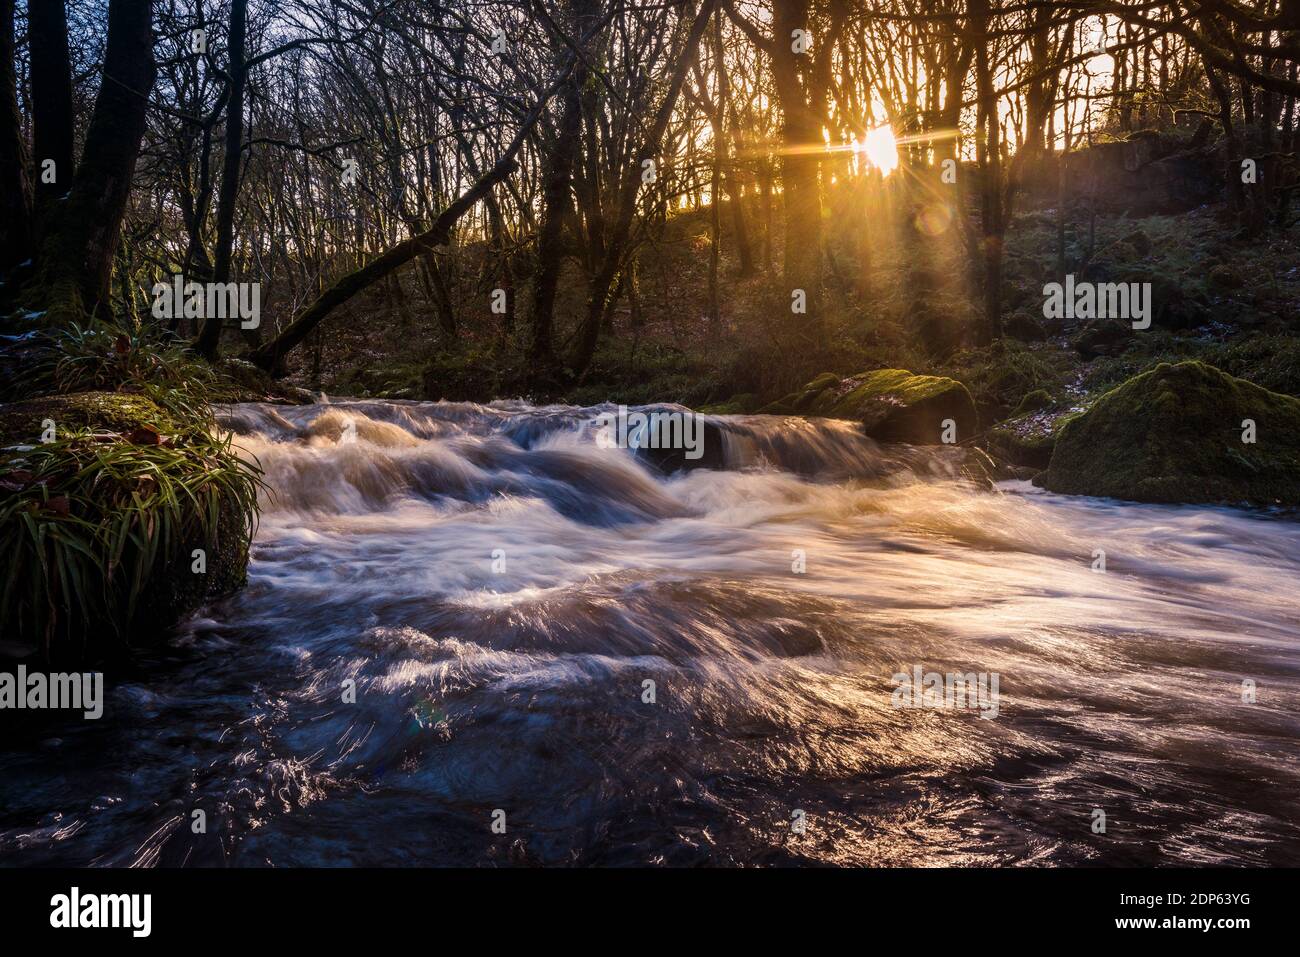 Nel tardo pomeriggio luce del sole mentre il fiume Fowey scorre lungo Golitha Falls nello storico e antico bosco Draynes Wood in Cornovaglia. Foto Stock